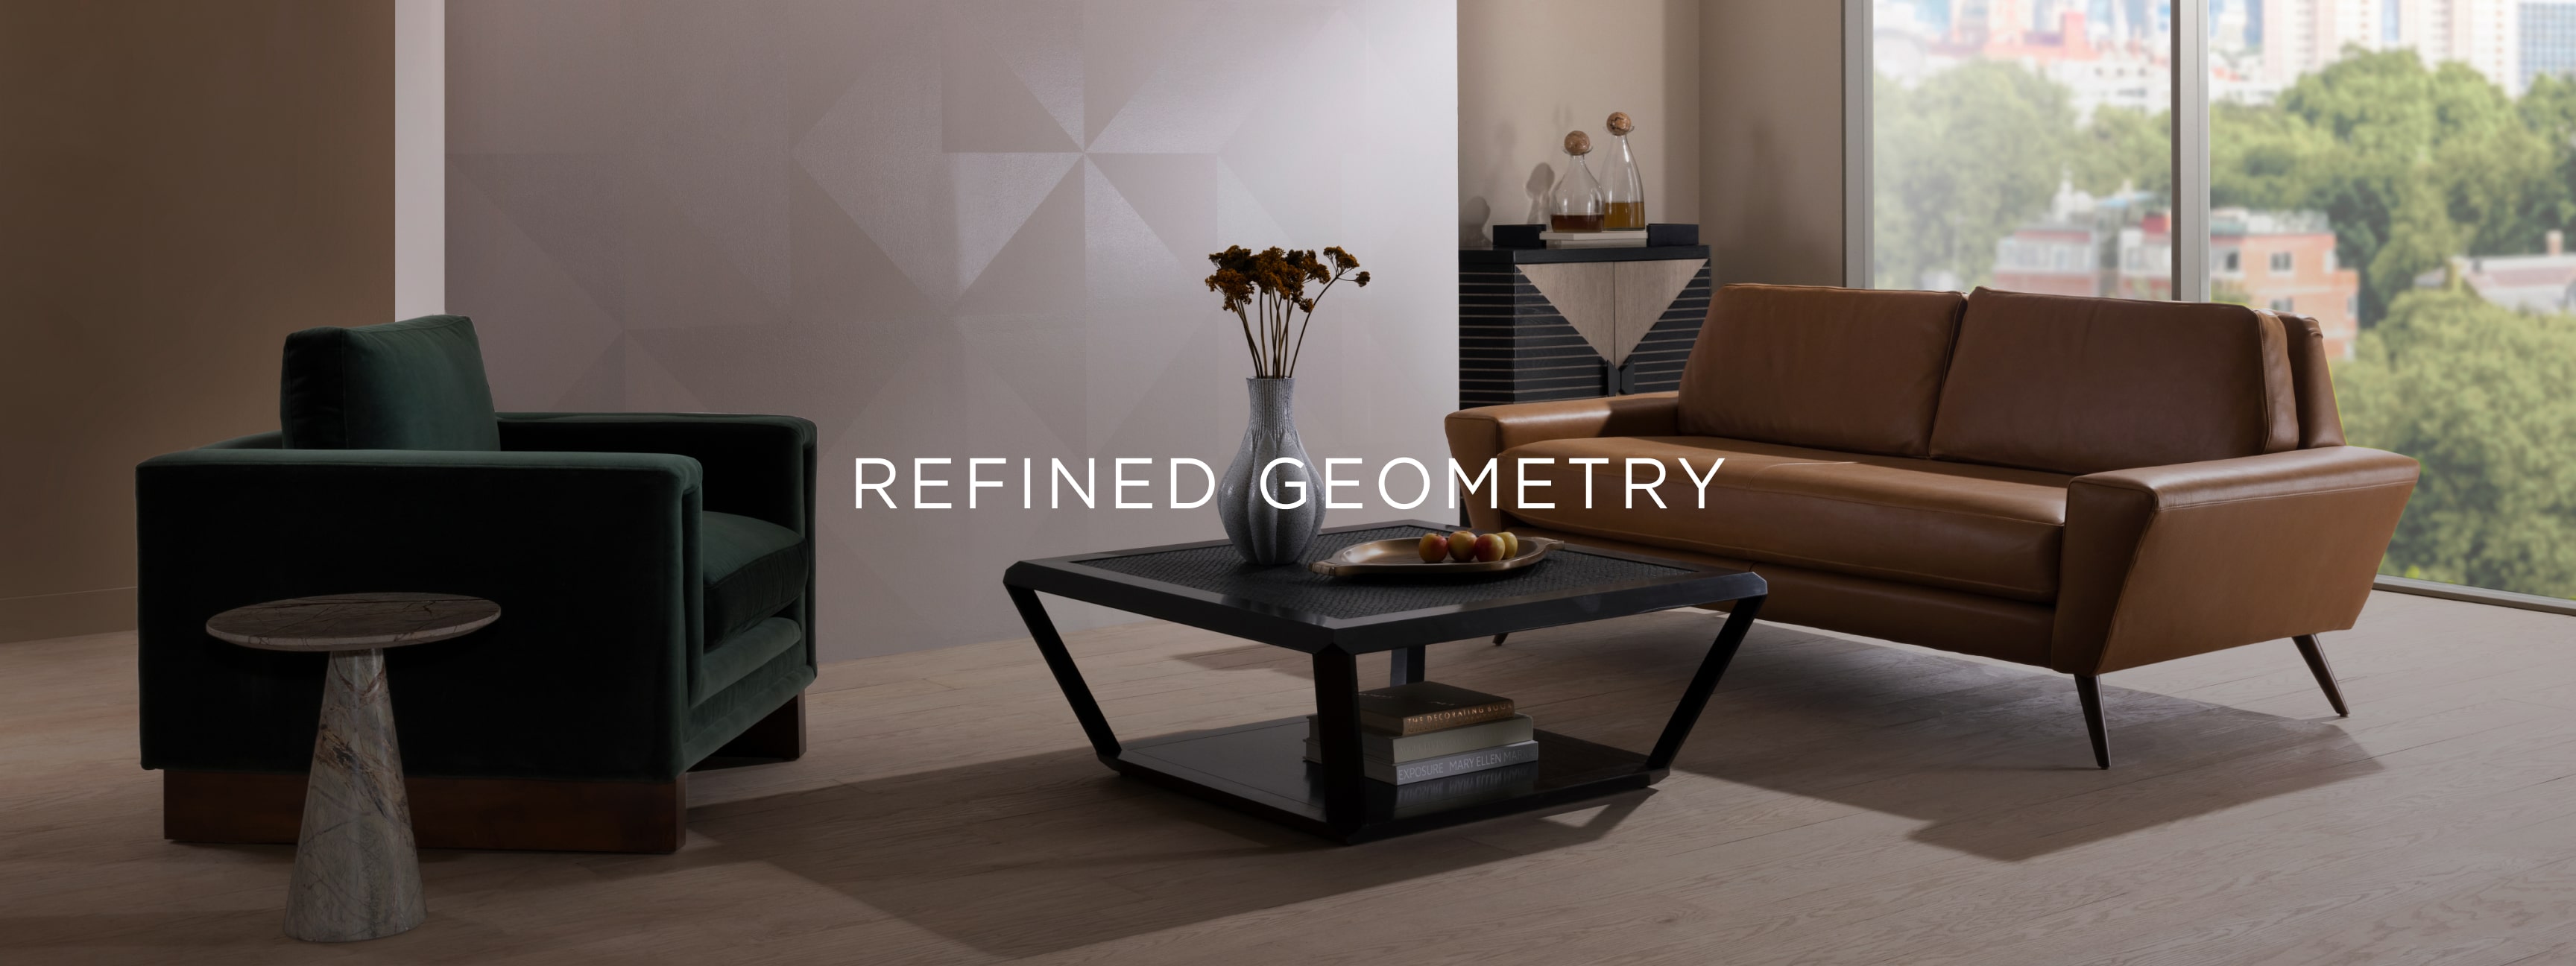 refined geometry